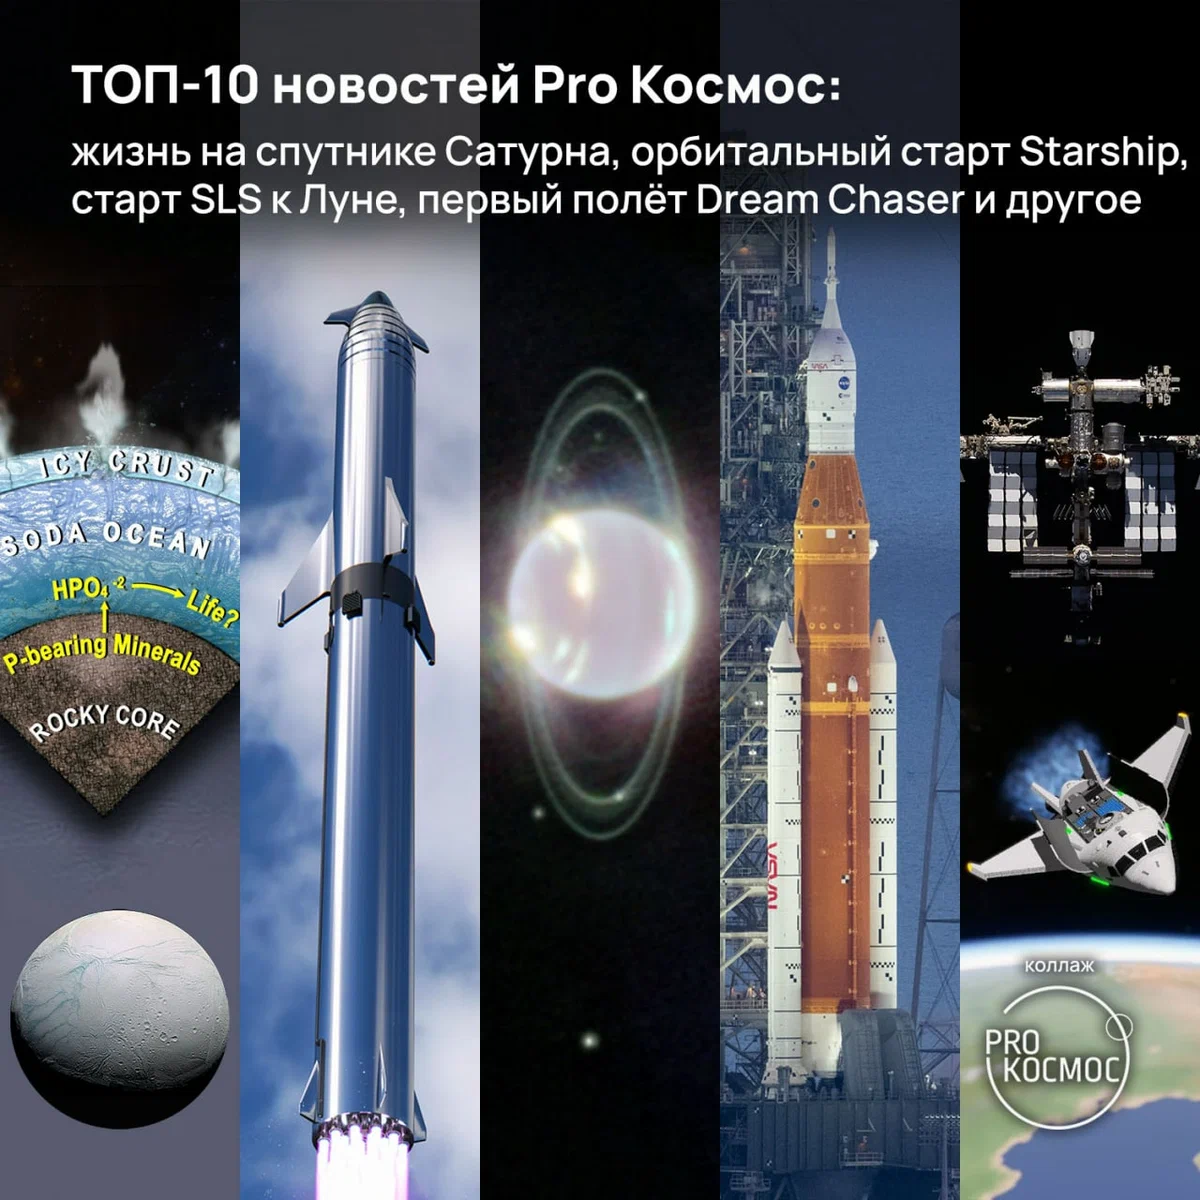 ТОП-10 новостей Pro Космос: height=1200px width=1200px